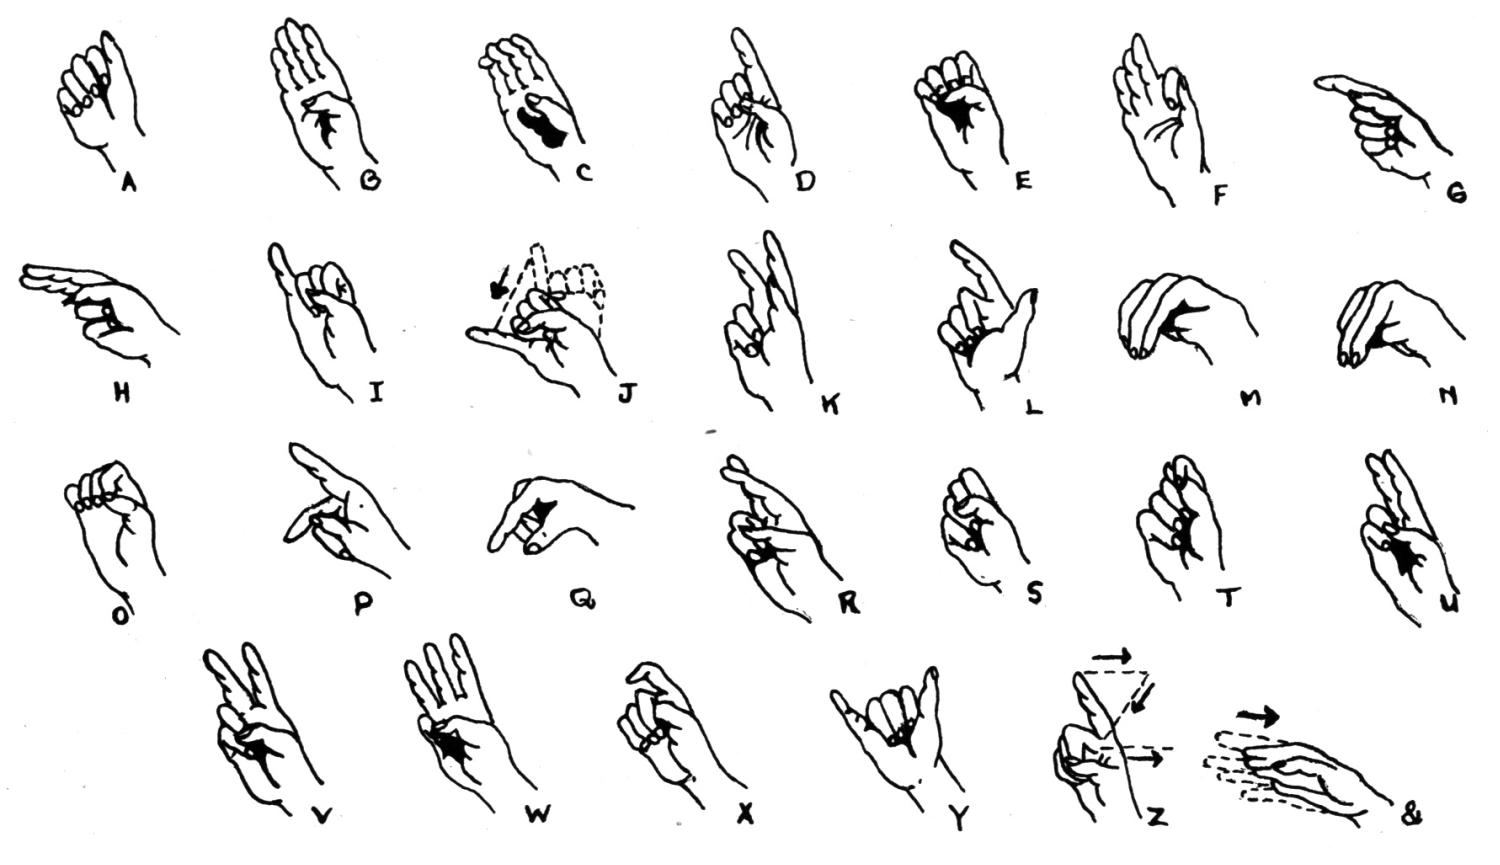  Sign Language Windows Backgrounds